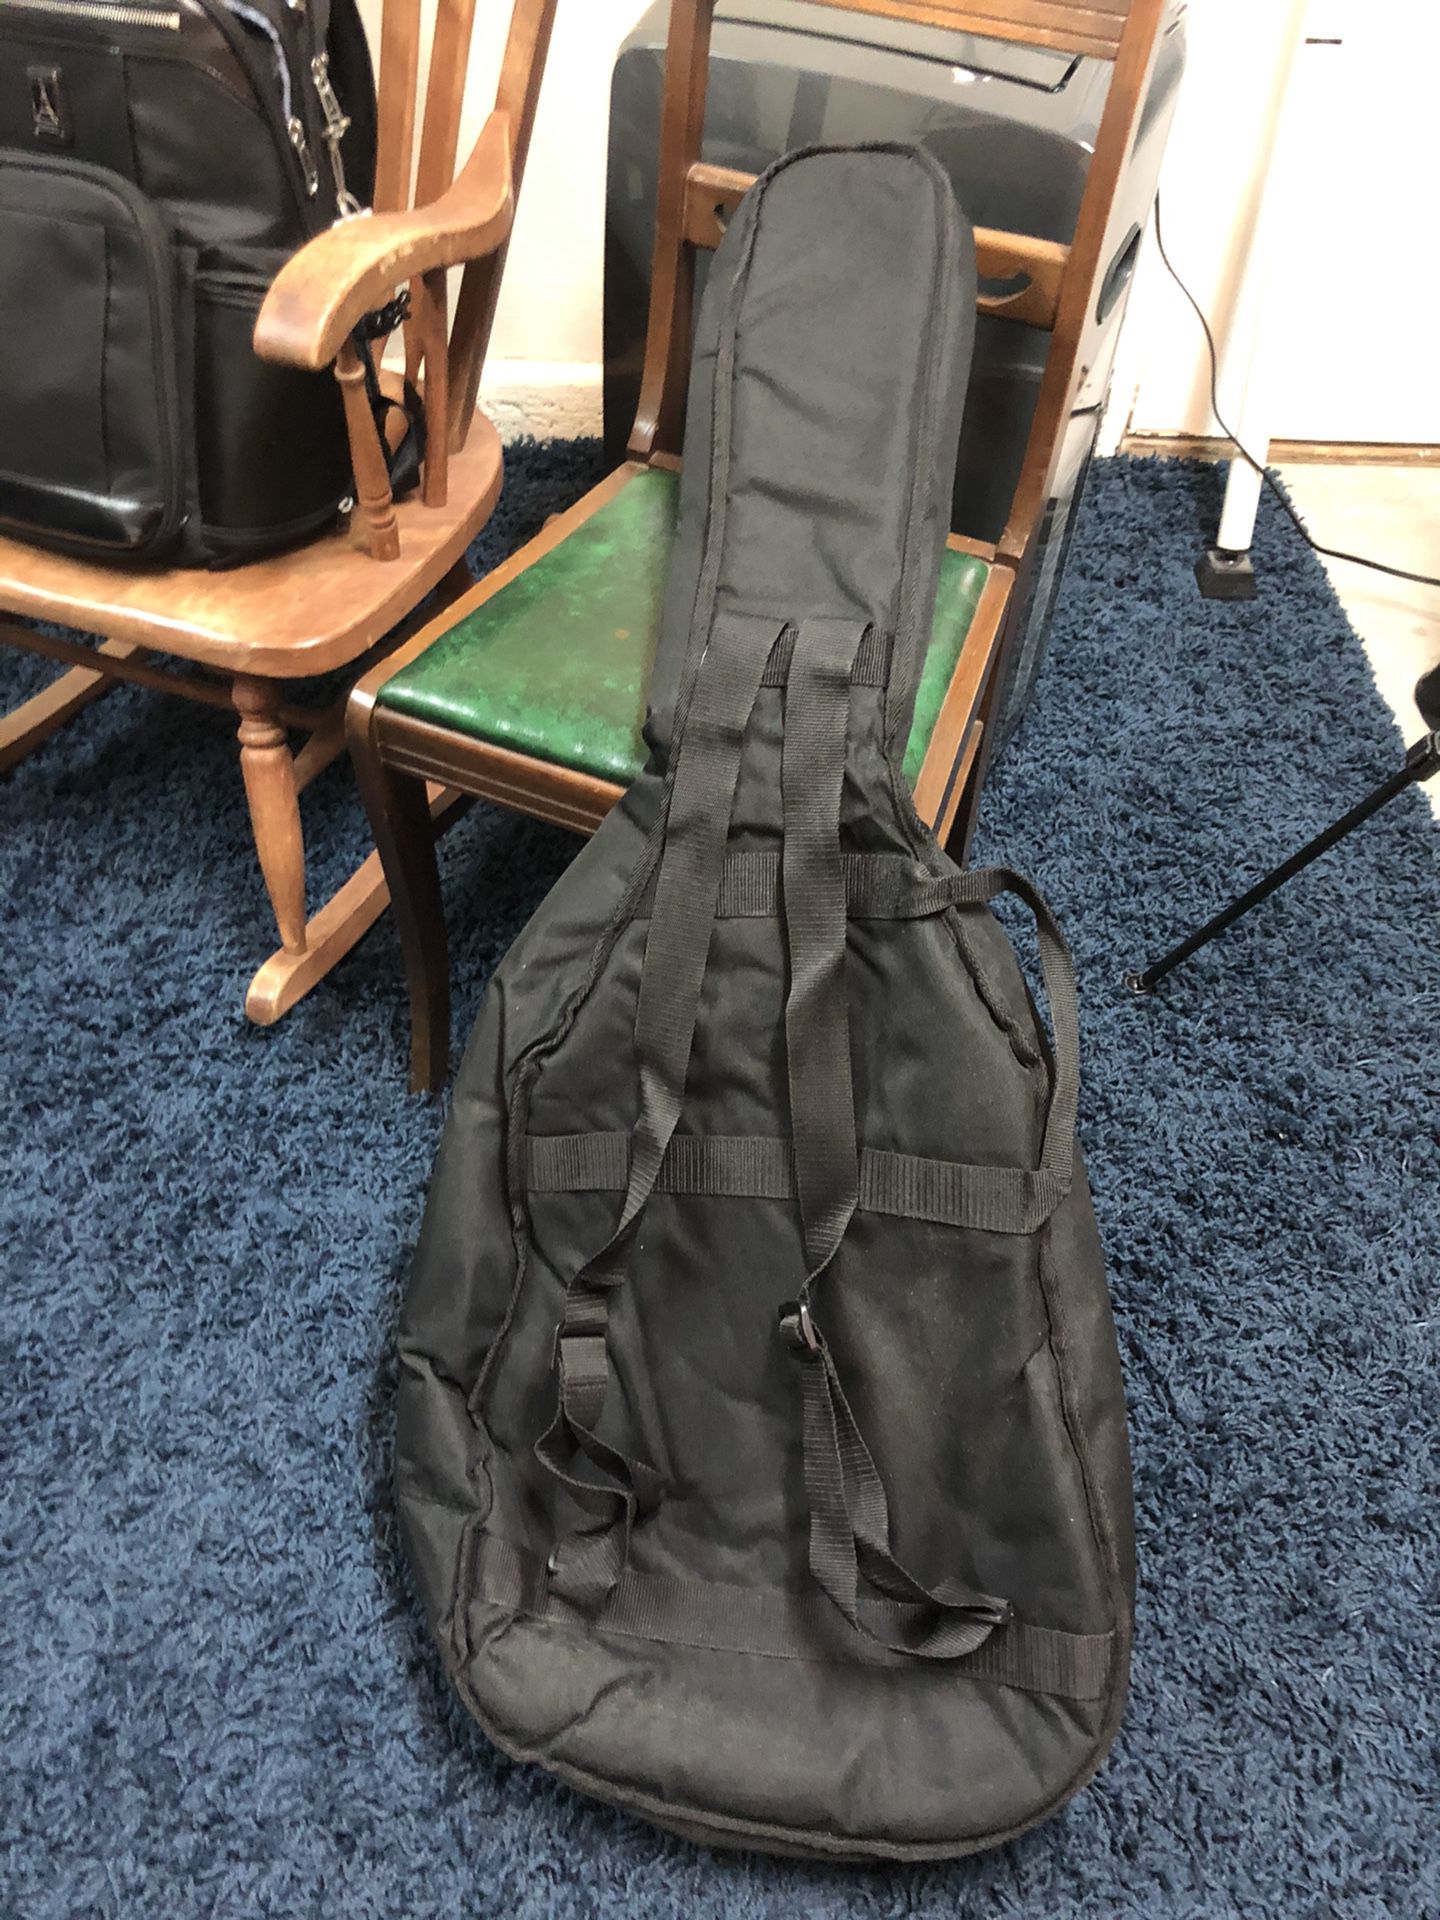 Soft guitar bag